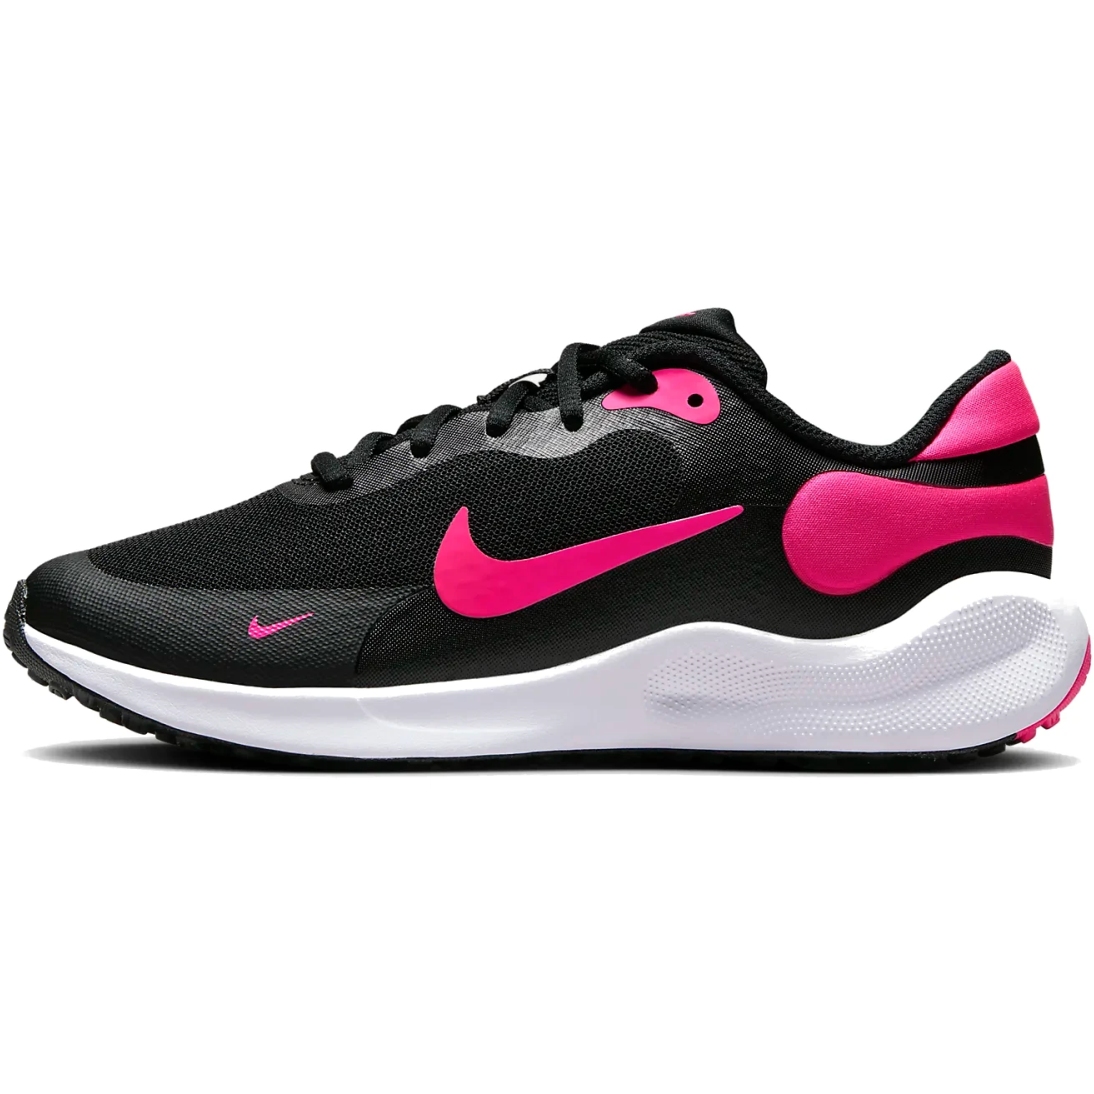 Immagine di Nike Scarpe Bambini - Revolution 7 GS - black/white/hyper pink FB7689-002